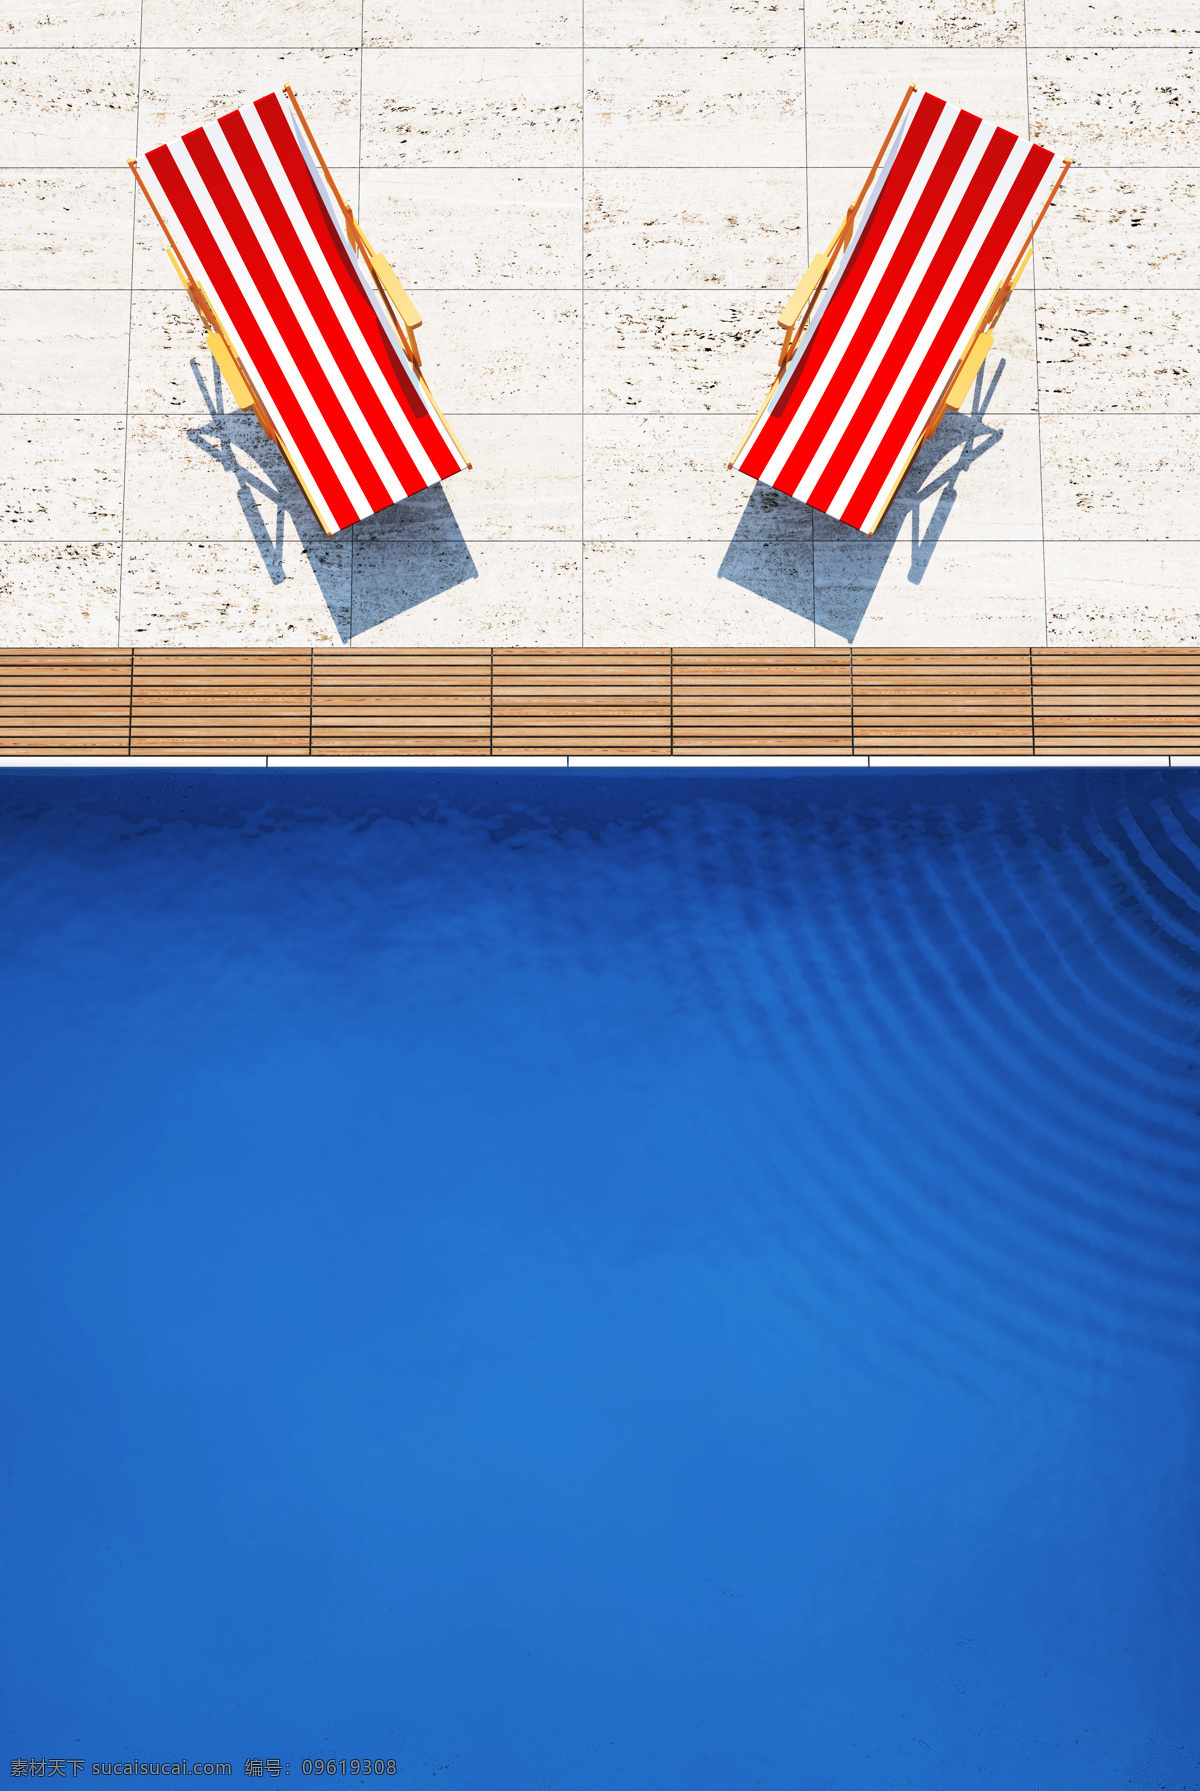 游泳池 边上 两 太阳 椅 水 太阳椅 红白条纹 自然风景 自然景观 蓝色